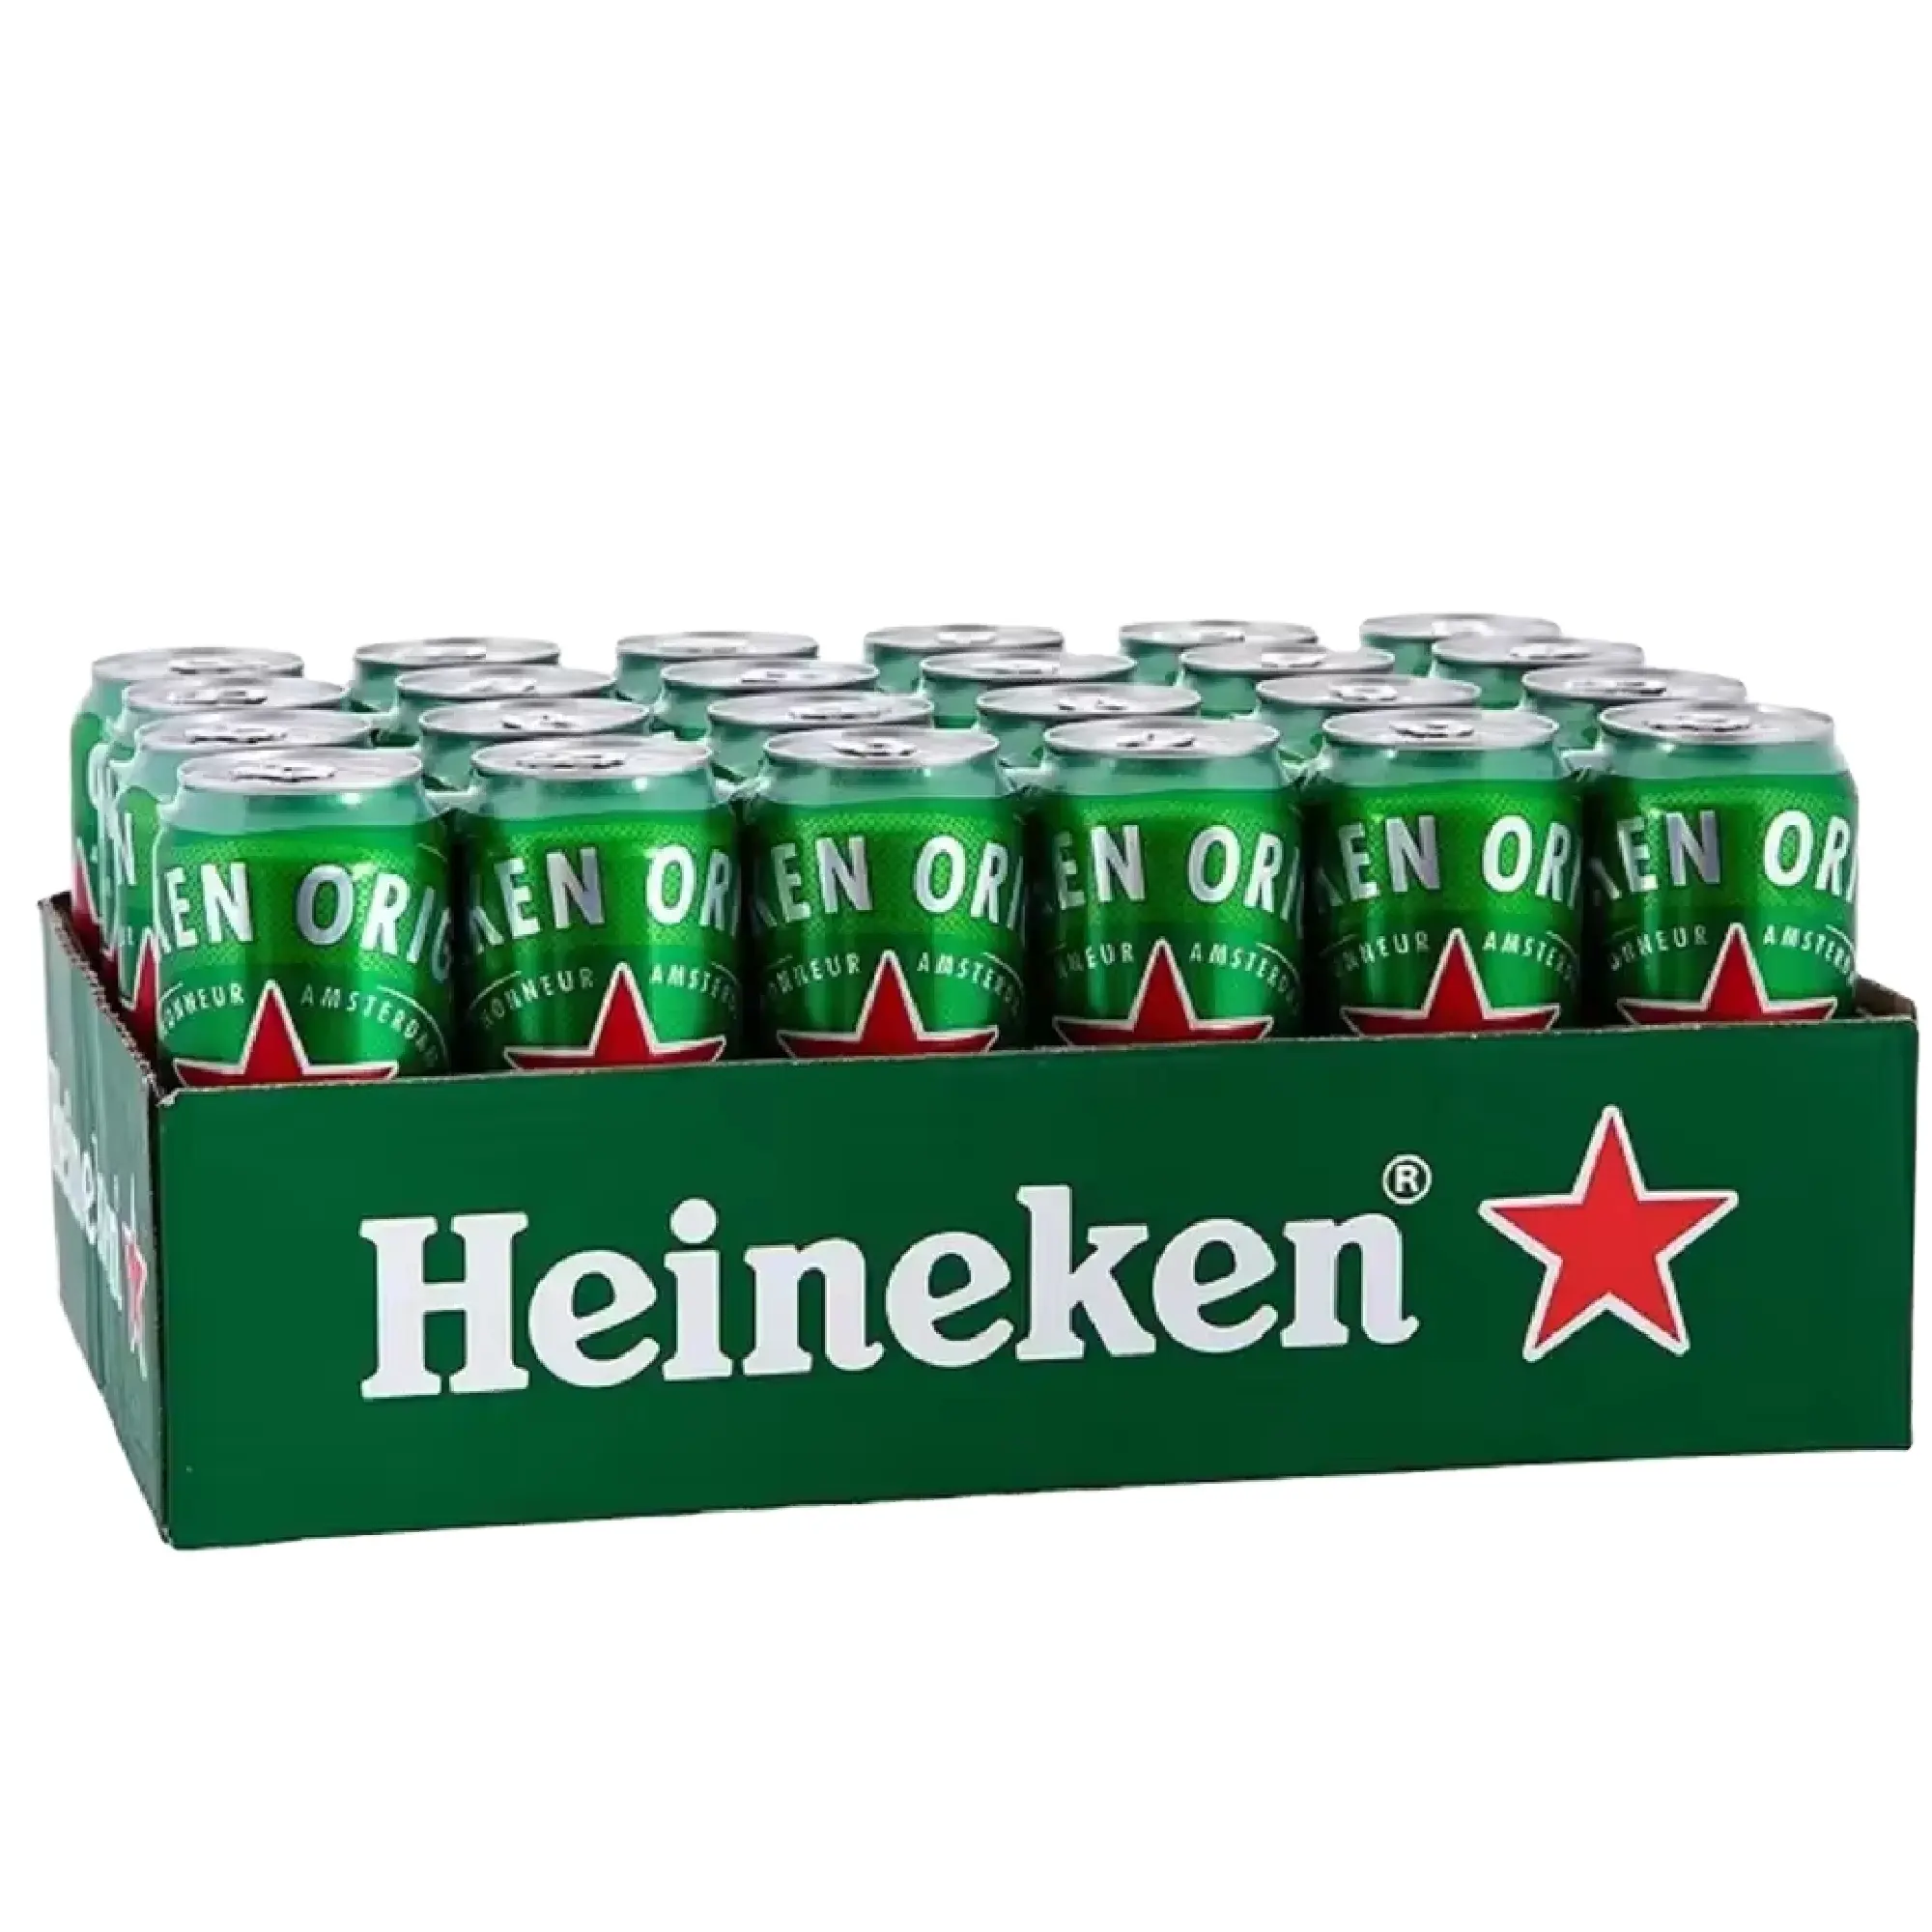 Цена голландского пива Heineken для пива Heineken Pilsner премиум-класса, 500 мл, оптовая продажа